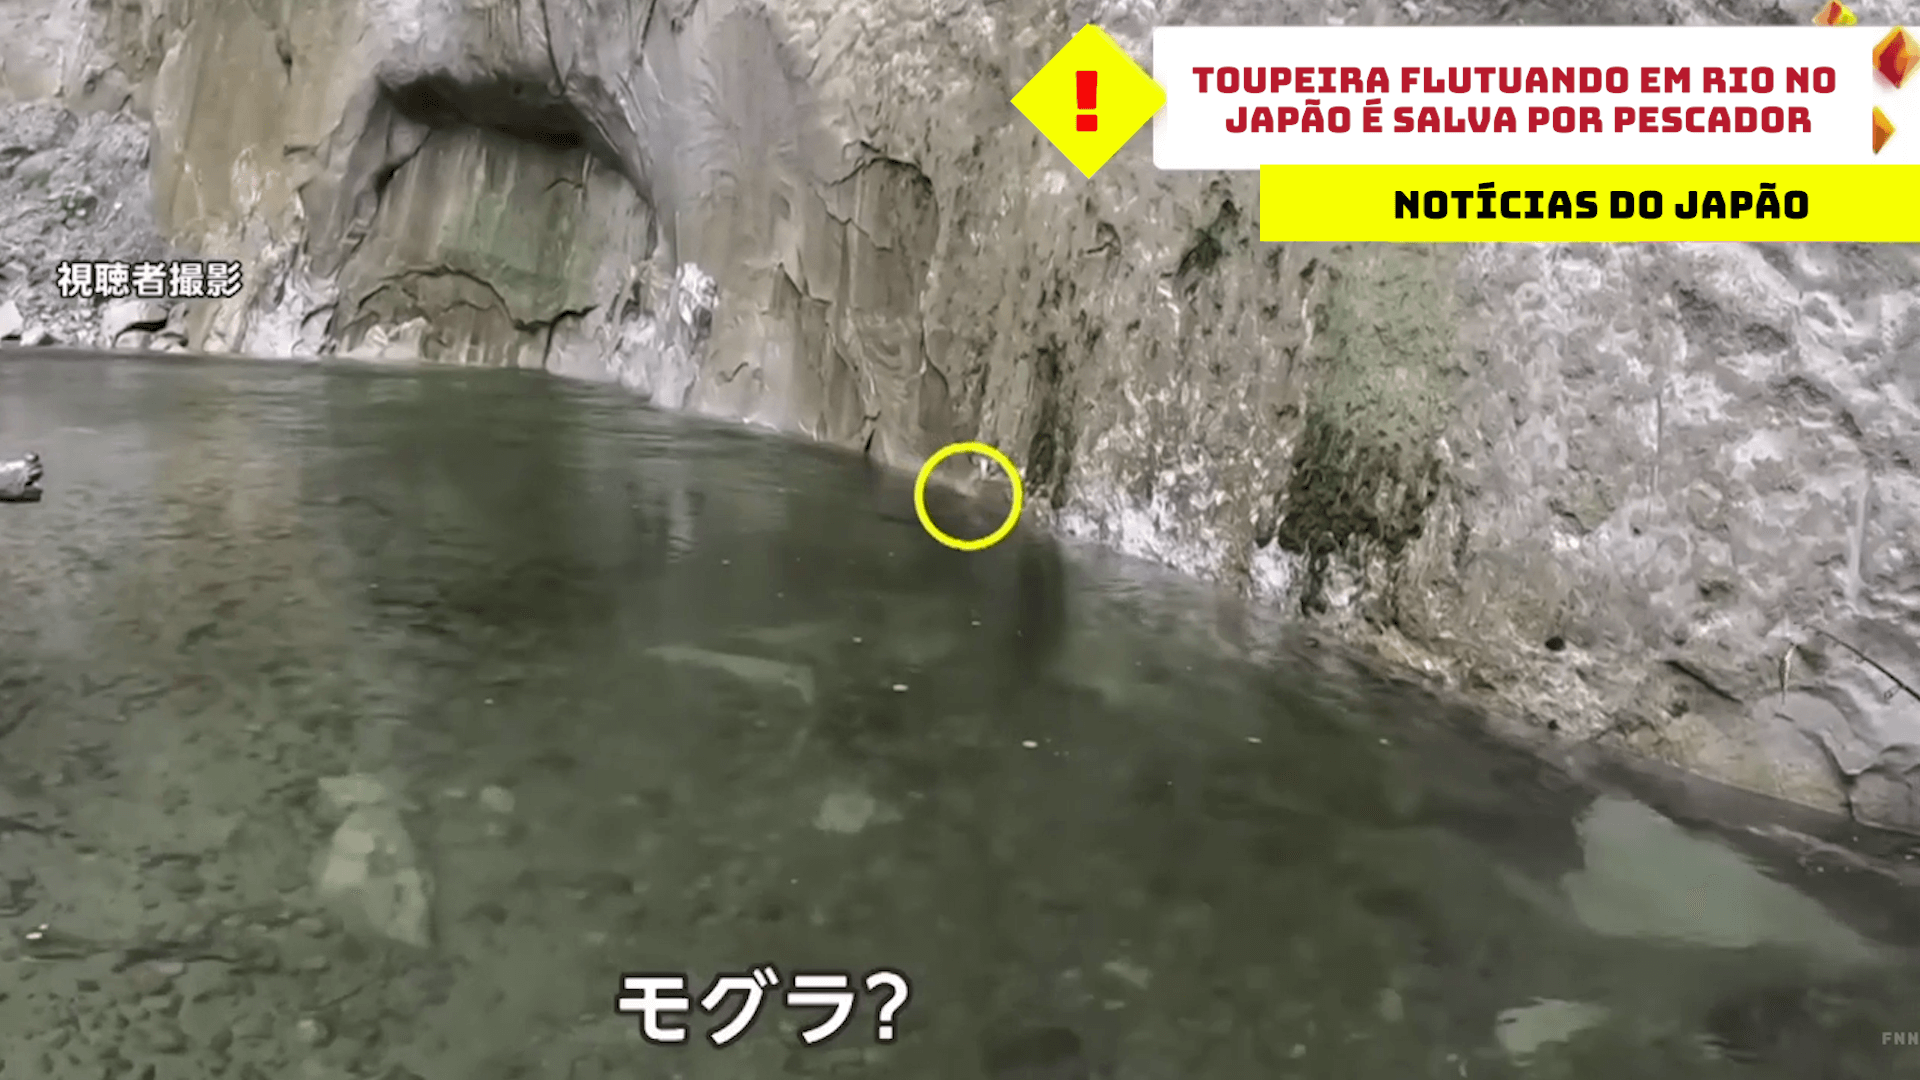 Toupeira flutuando em rio no Japão é salva por pescador 